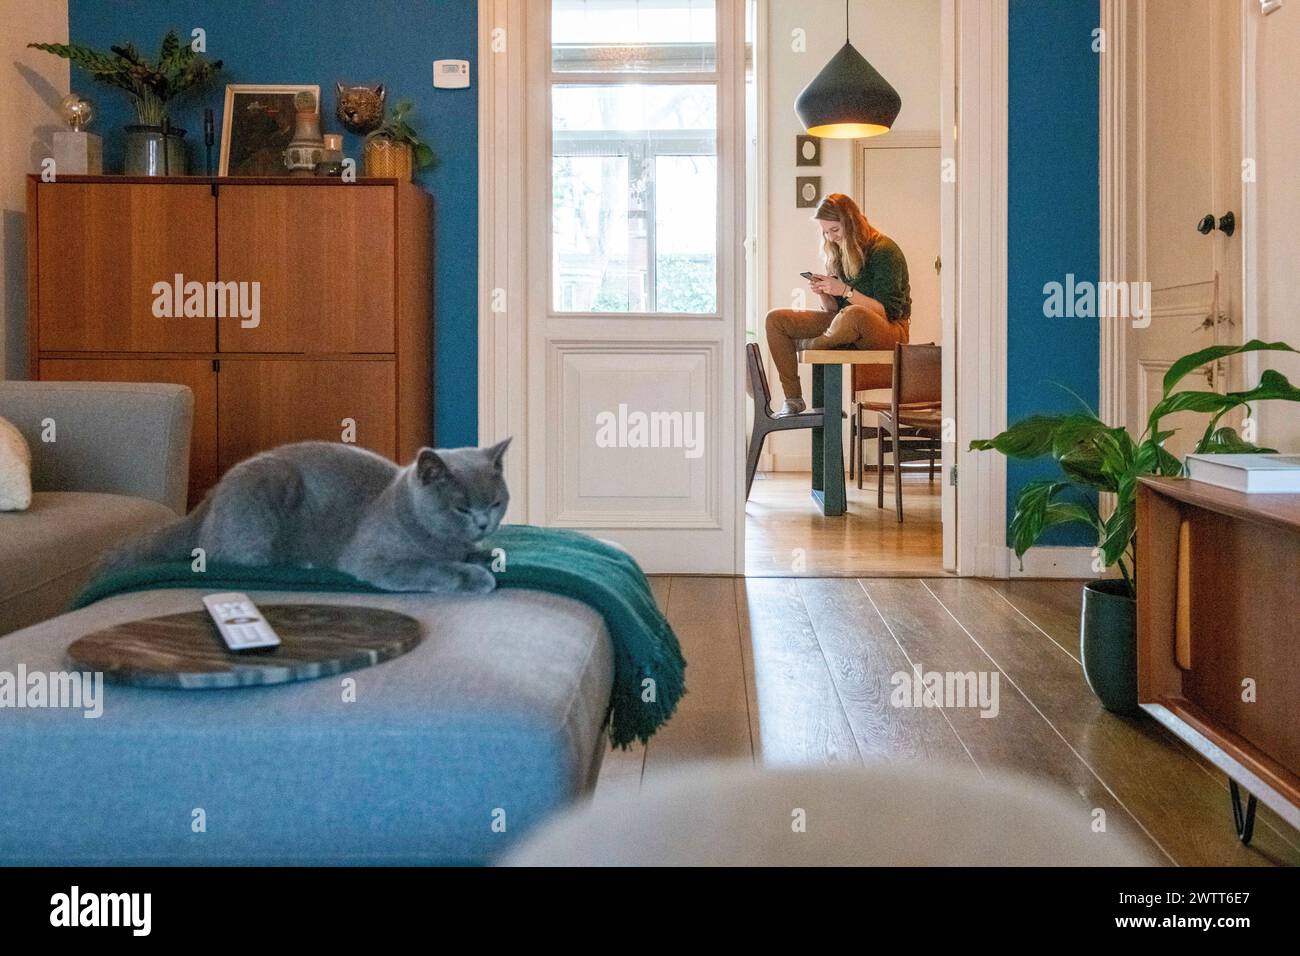 Gemütliches Zuhause mit einer Frau, die einen Moment genießt, und einer verschlafenen Katze, die in der Nähe liegt Stockfoto